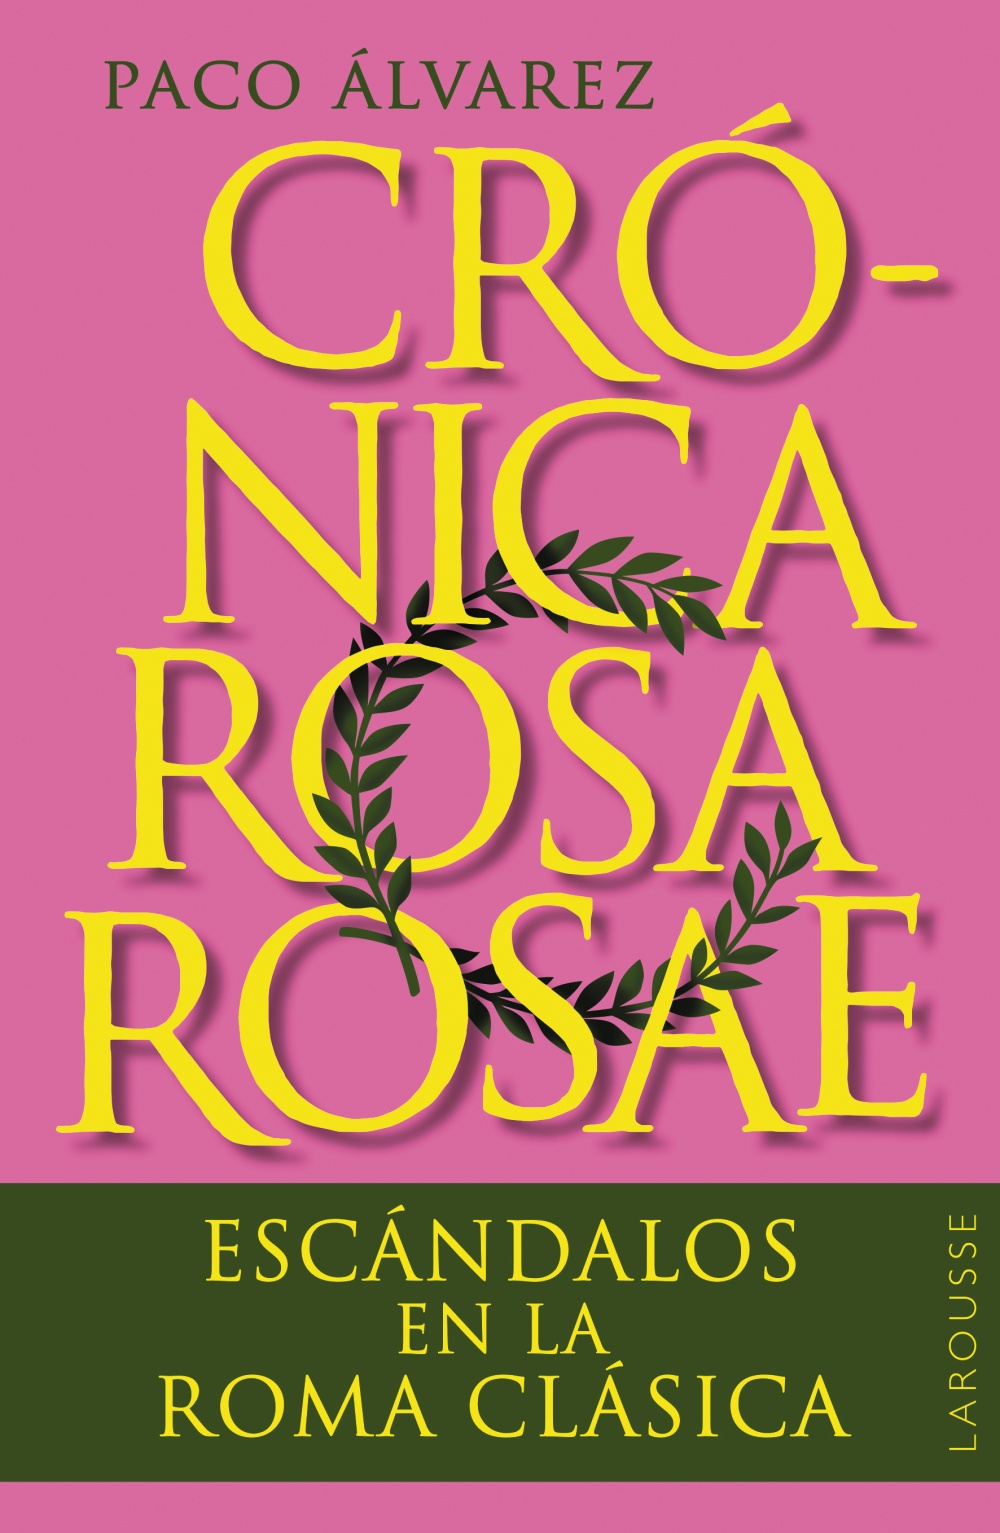 Paco Álvarez presenta en Casa Mediterráneo 'Rosa rosae', un libro sobre los cotilleos más sonados en la Roma clásica  en DESTACADOS LETRAS 